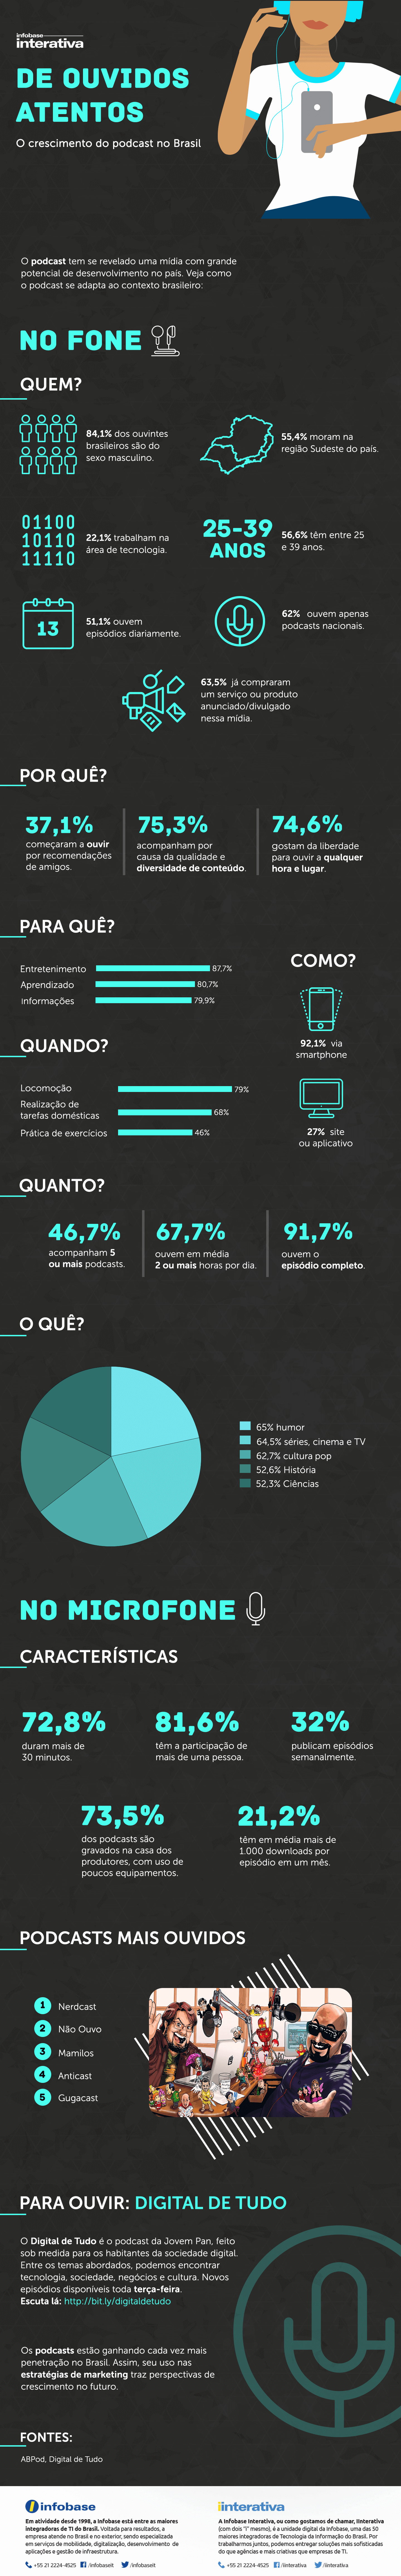 Infográfico sobre podcasts no Brasil